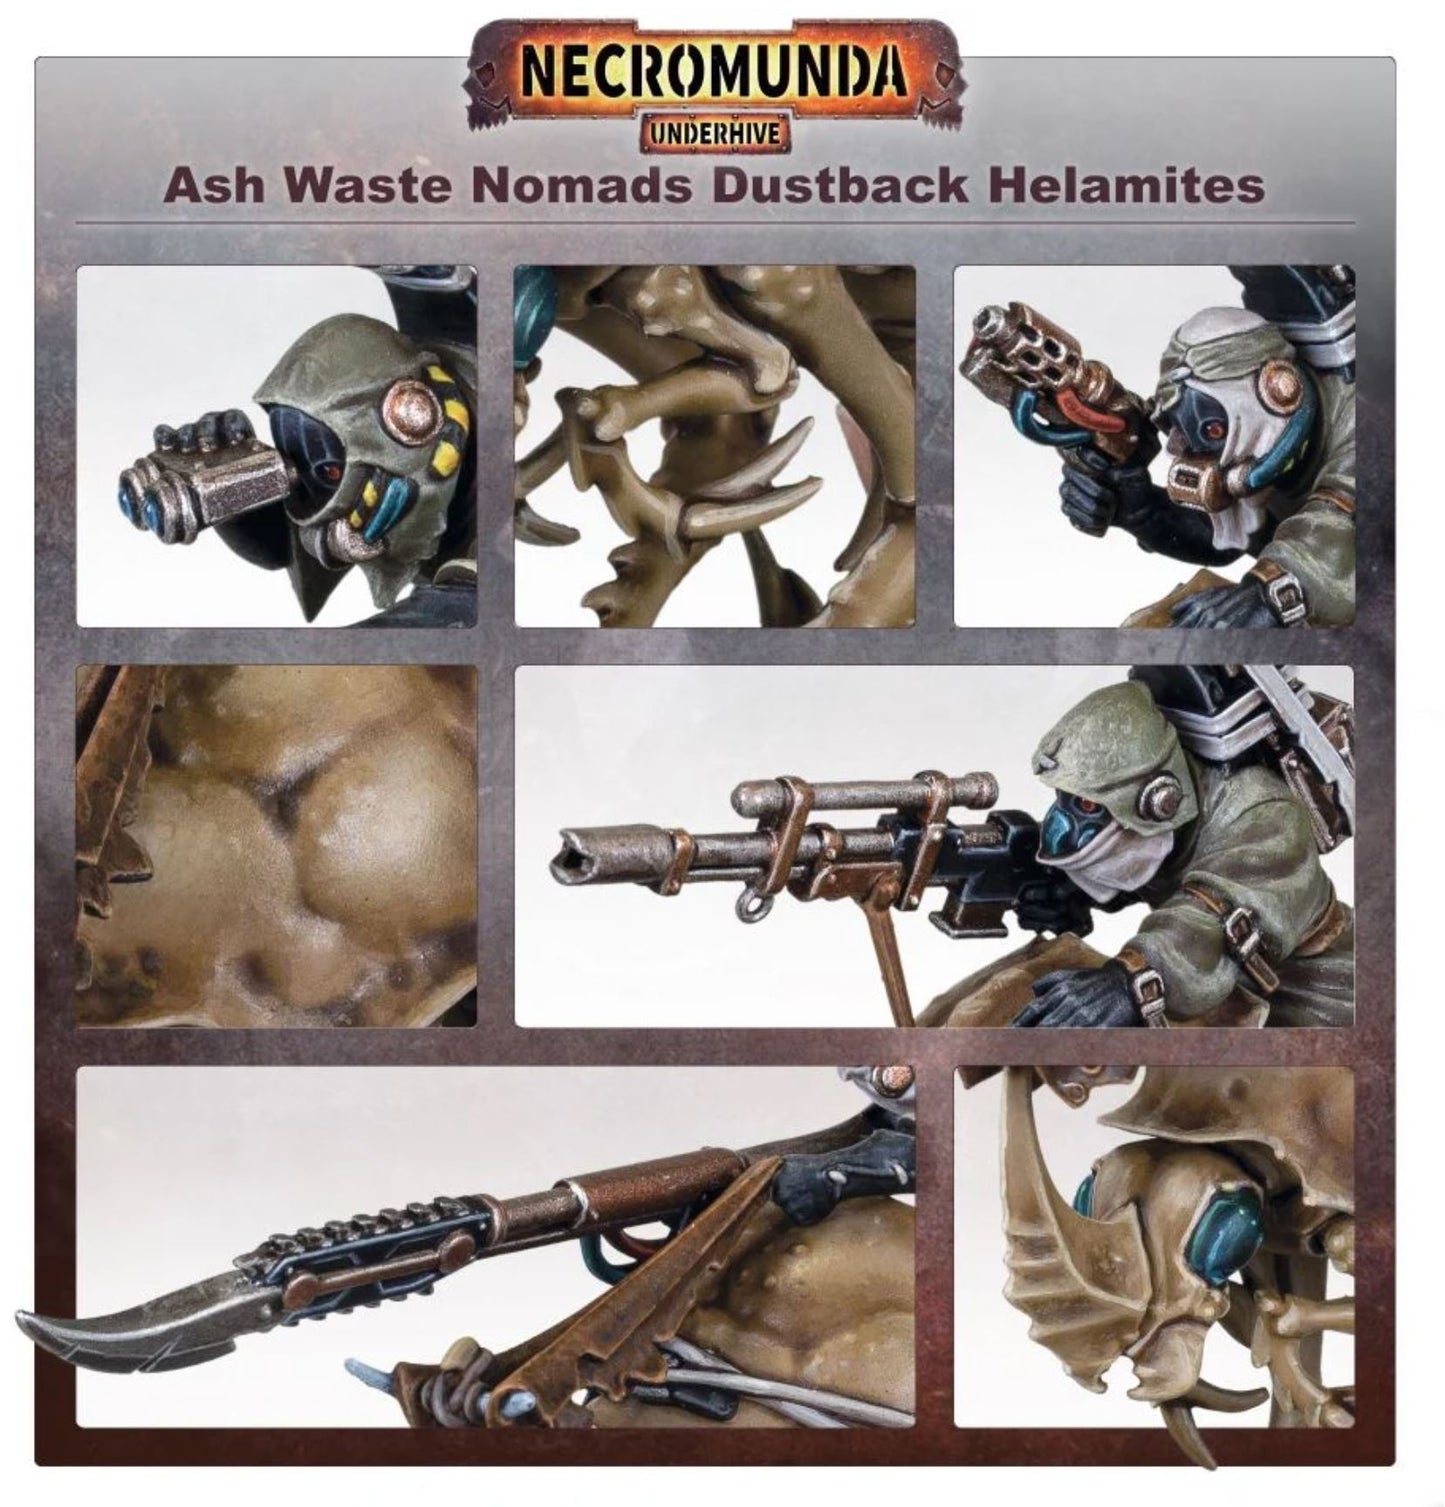 Necromunda - Ash Waste Nomads Dustback Helamites